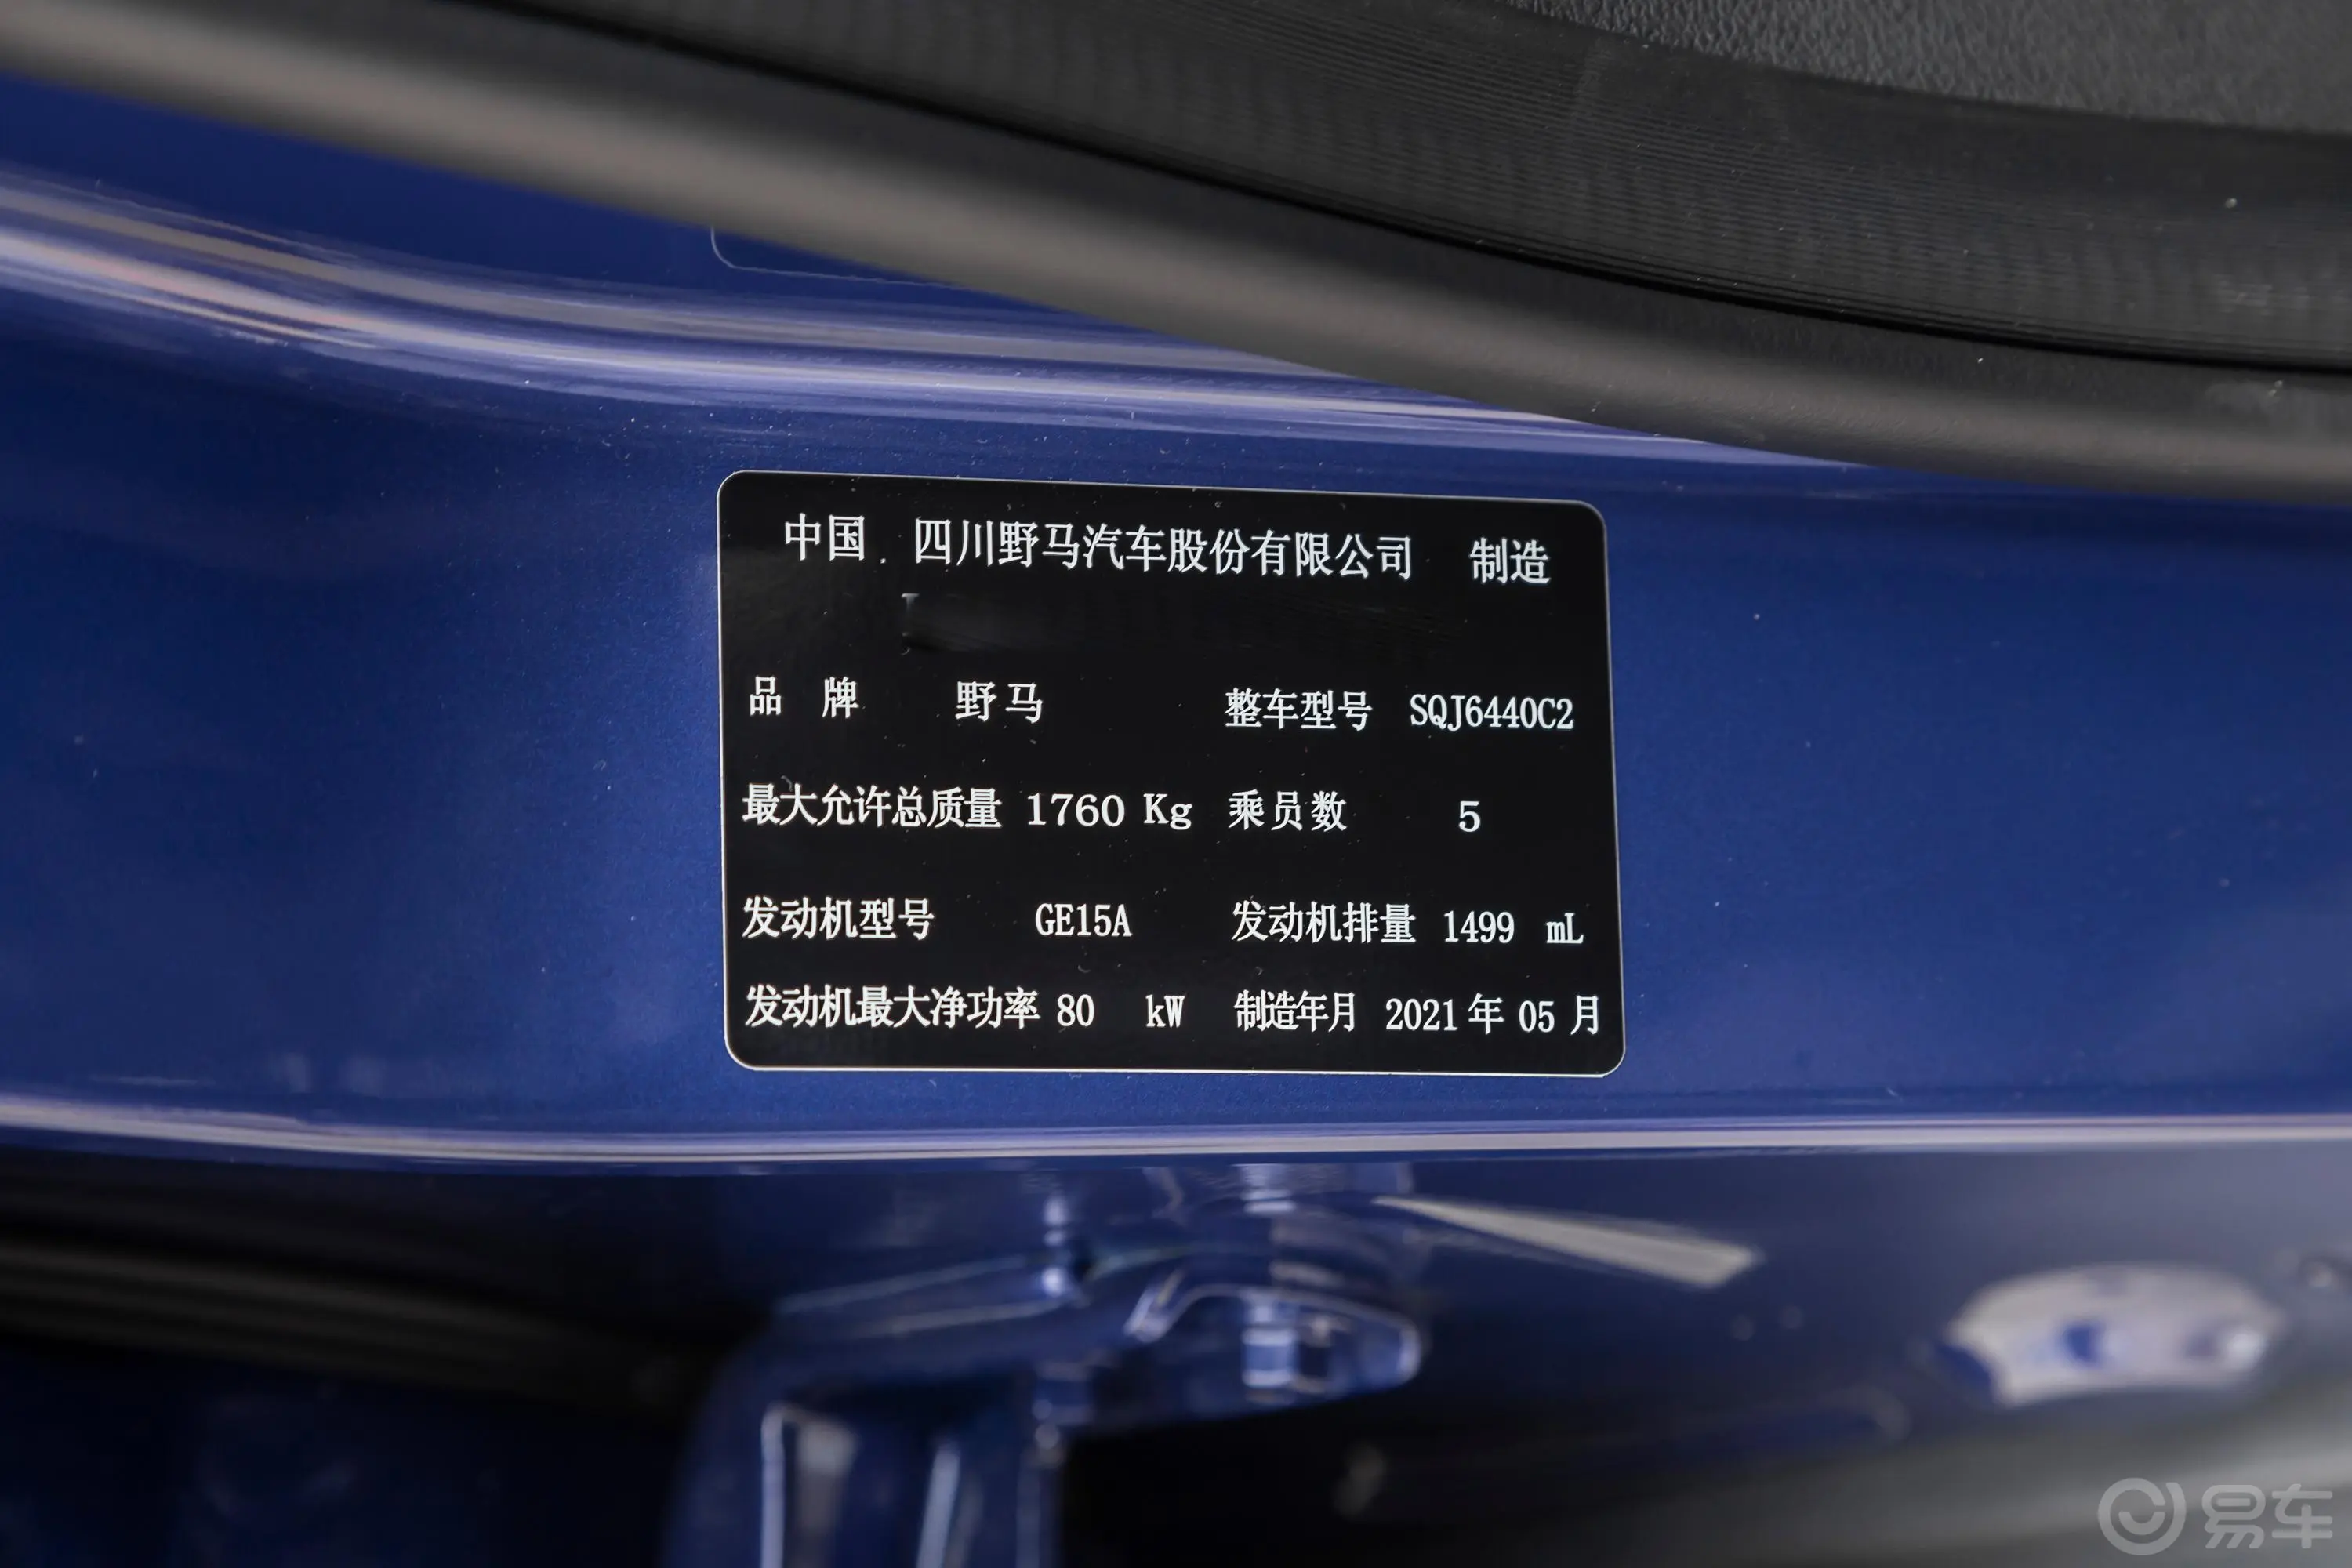 博骏1.5L CVT 豪华型车辆信息铭牌